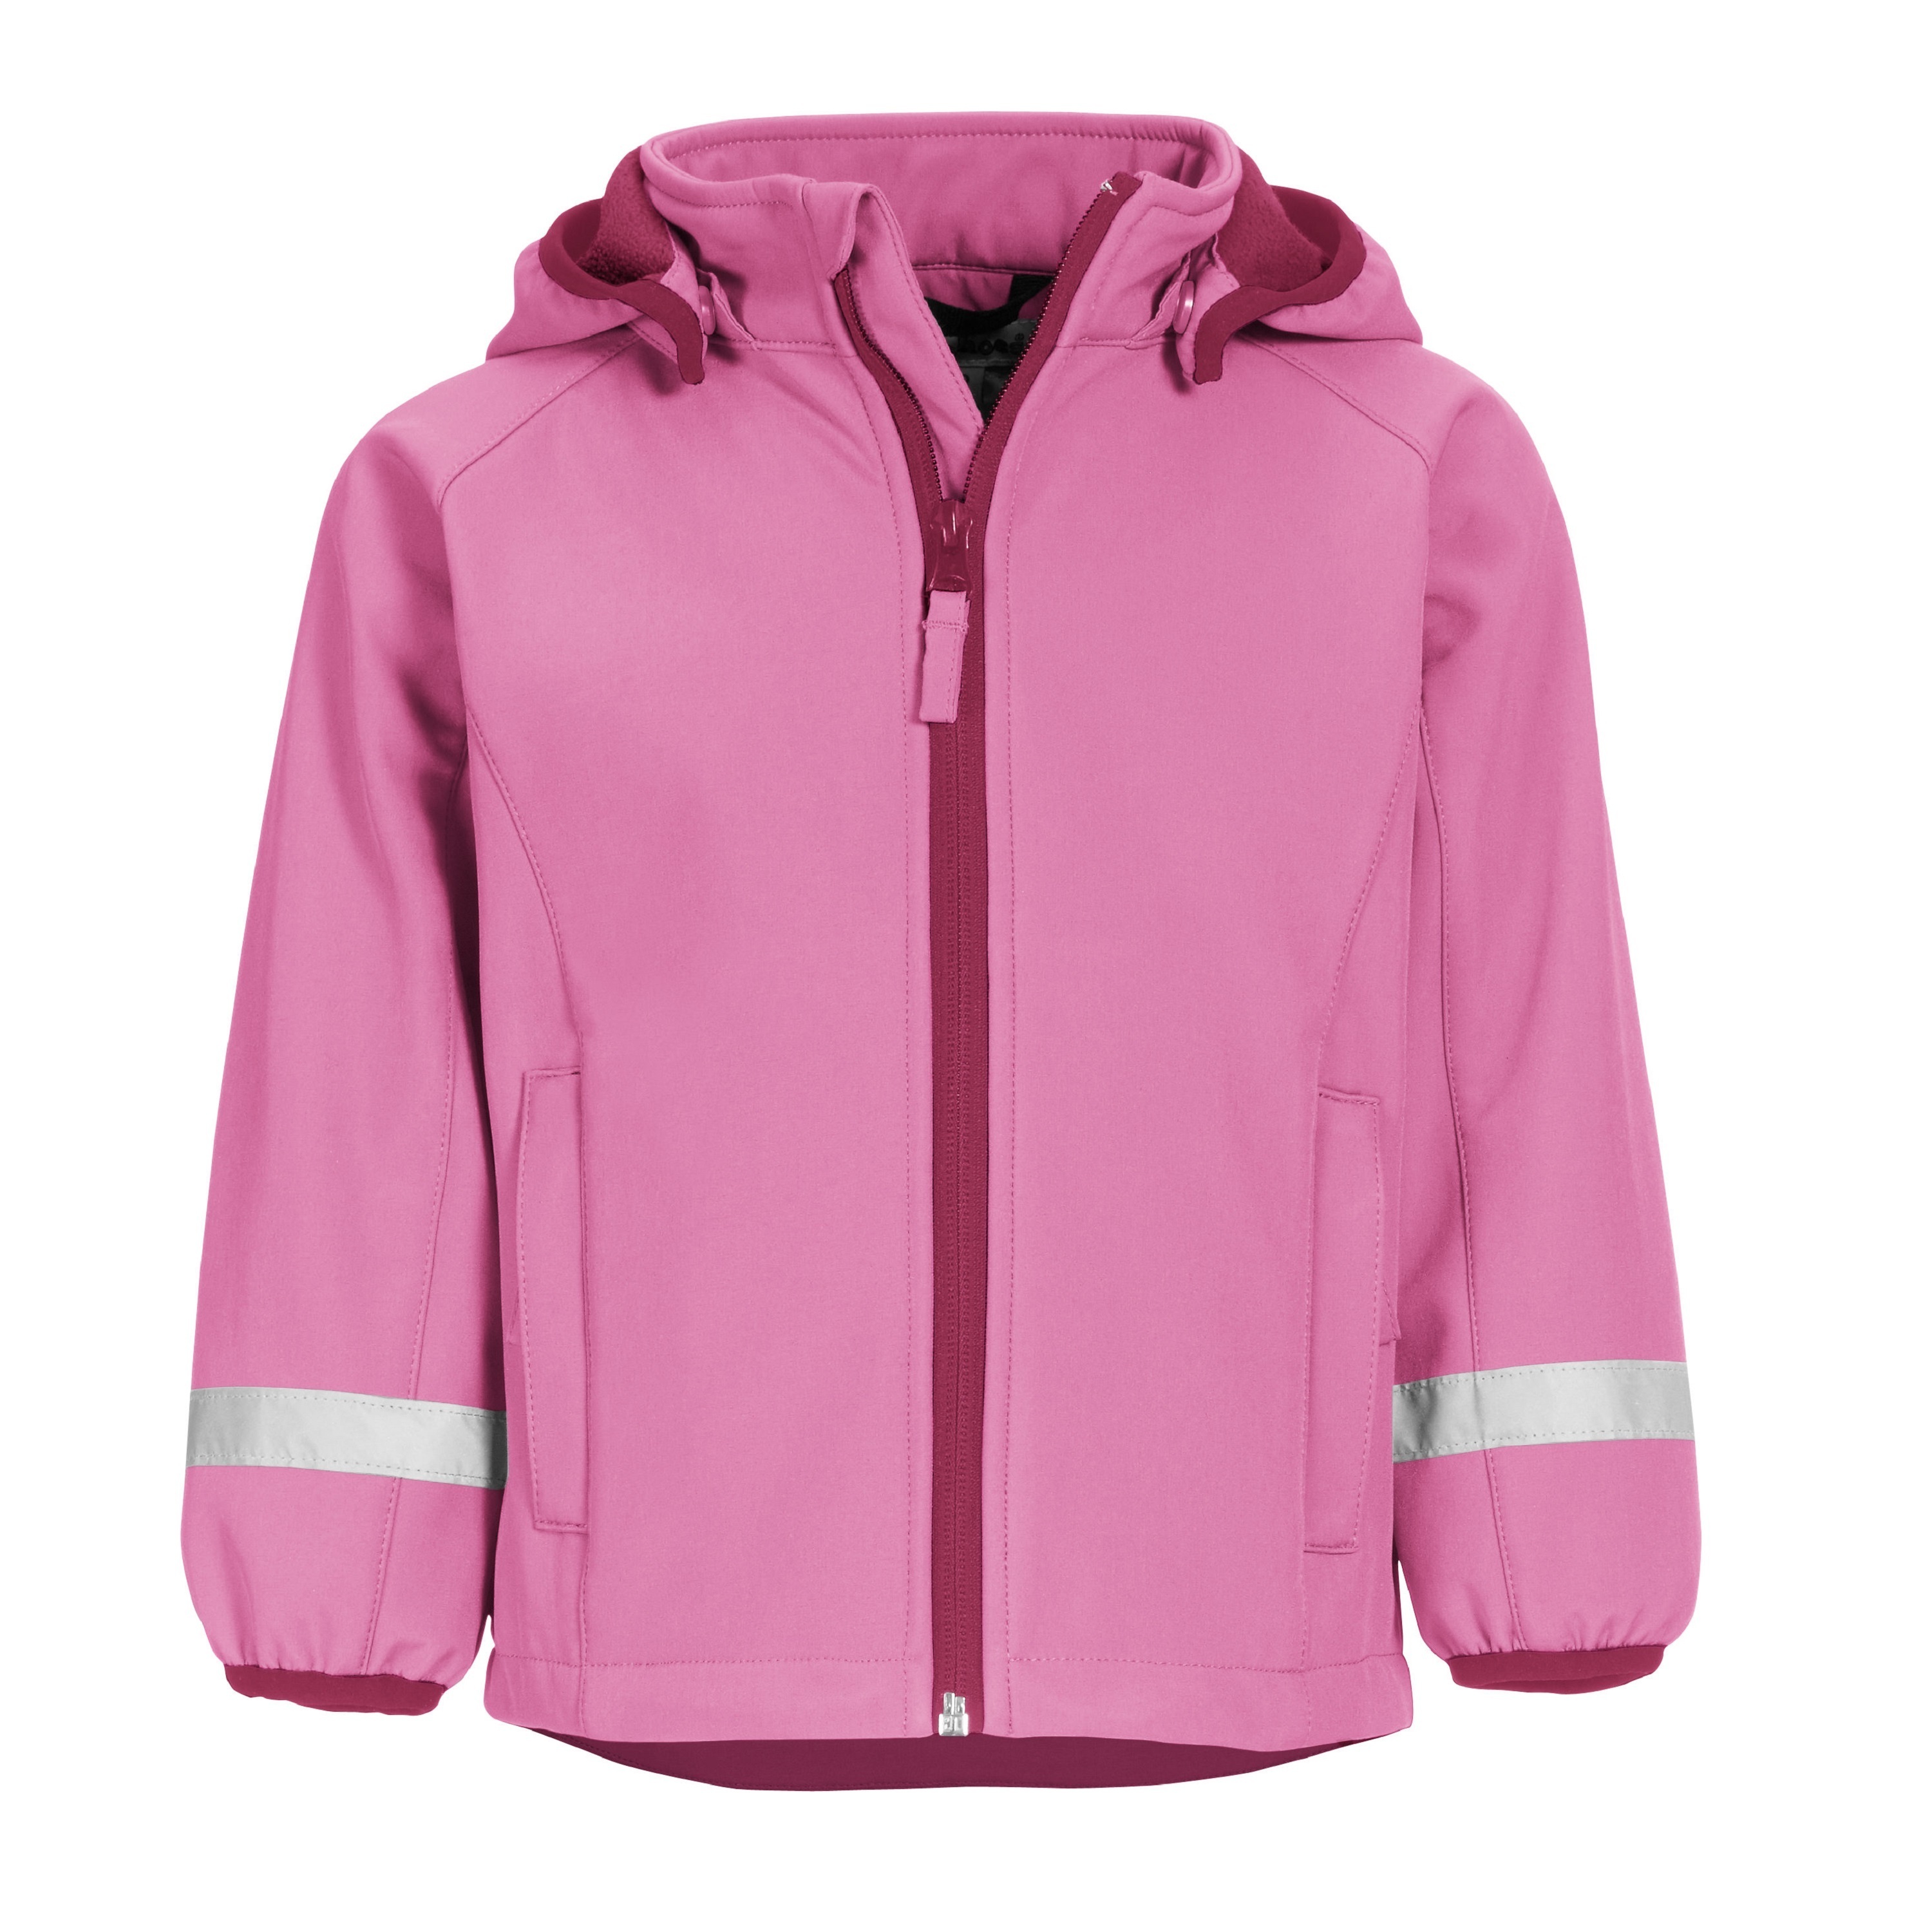 Куртка детская Playshoes 430110, розовый, 116 непромокаемая детская куртка без подклада акула playshoes синий